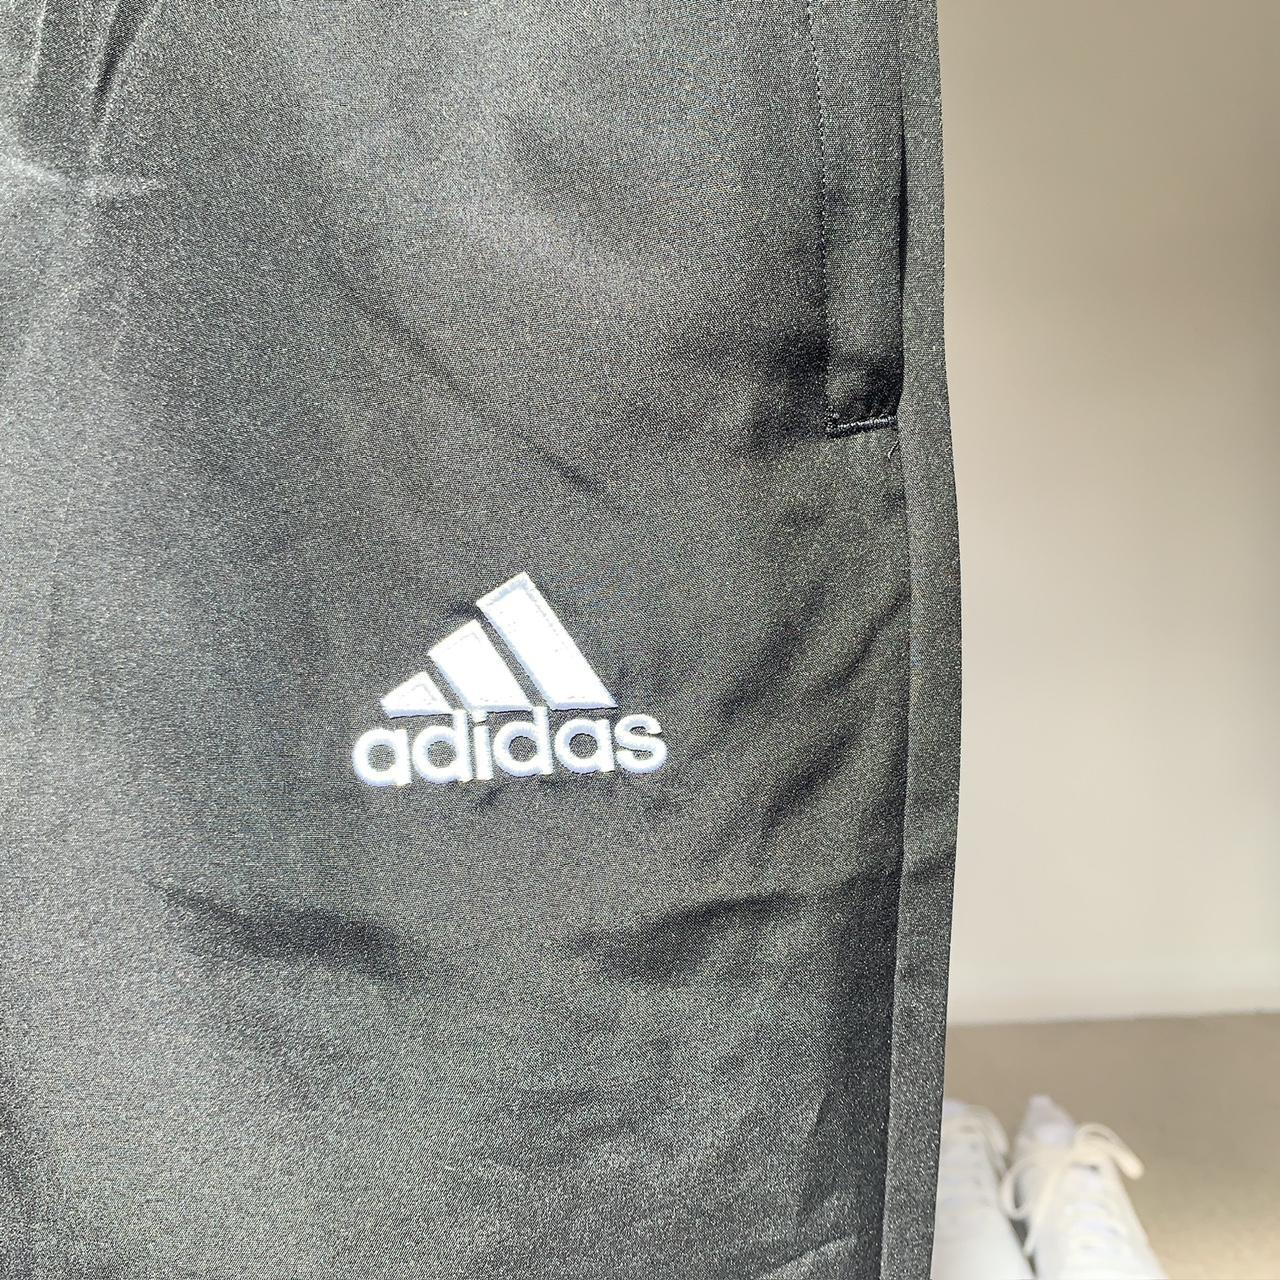 Adidas joggers - Small BNWT black slim fit... - Depop